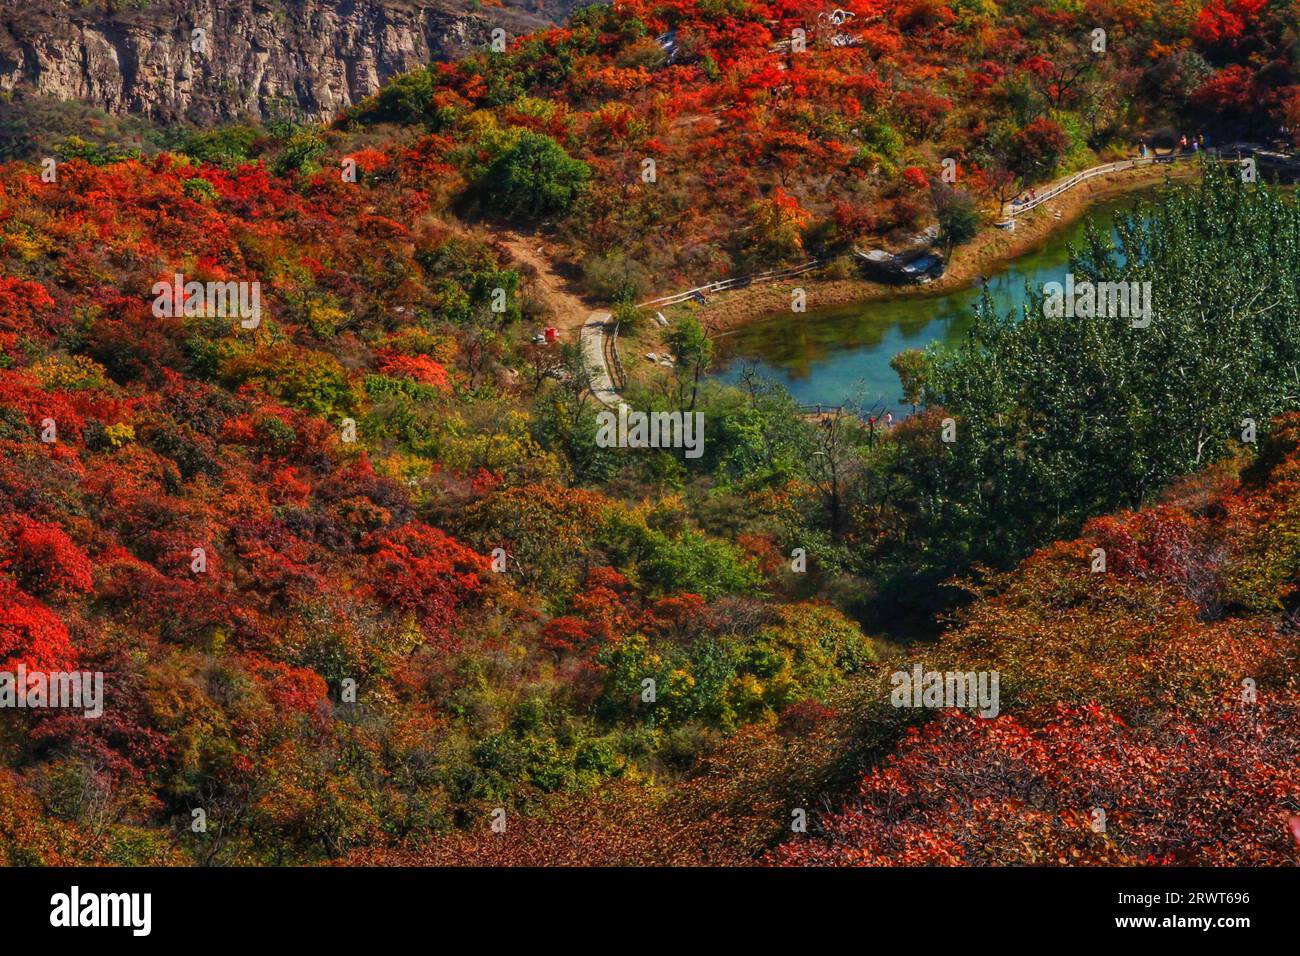 Halten Sie die Magie der Natur fest, während leuchtende rote und grüne Gräser atemberaubende Kontraste vor der Kulisse der majestätischen Berge Chinas schaffen Stockfoto